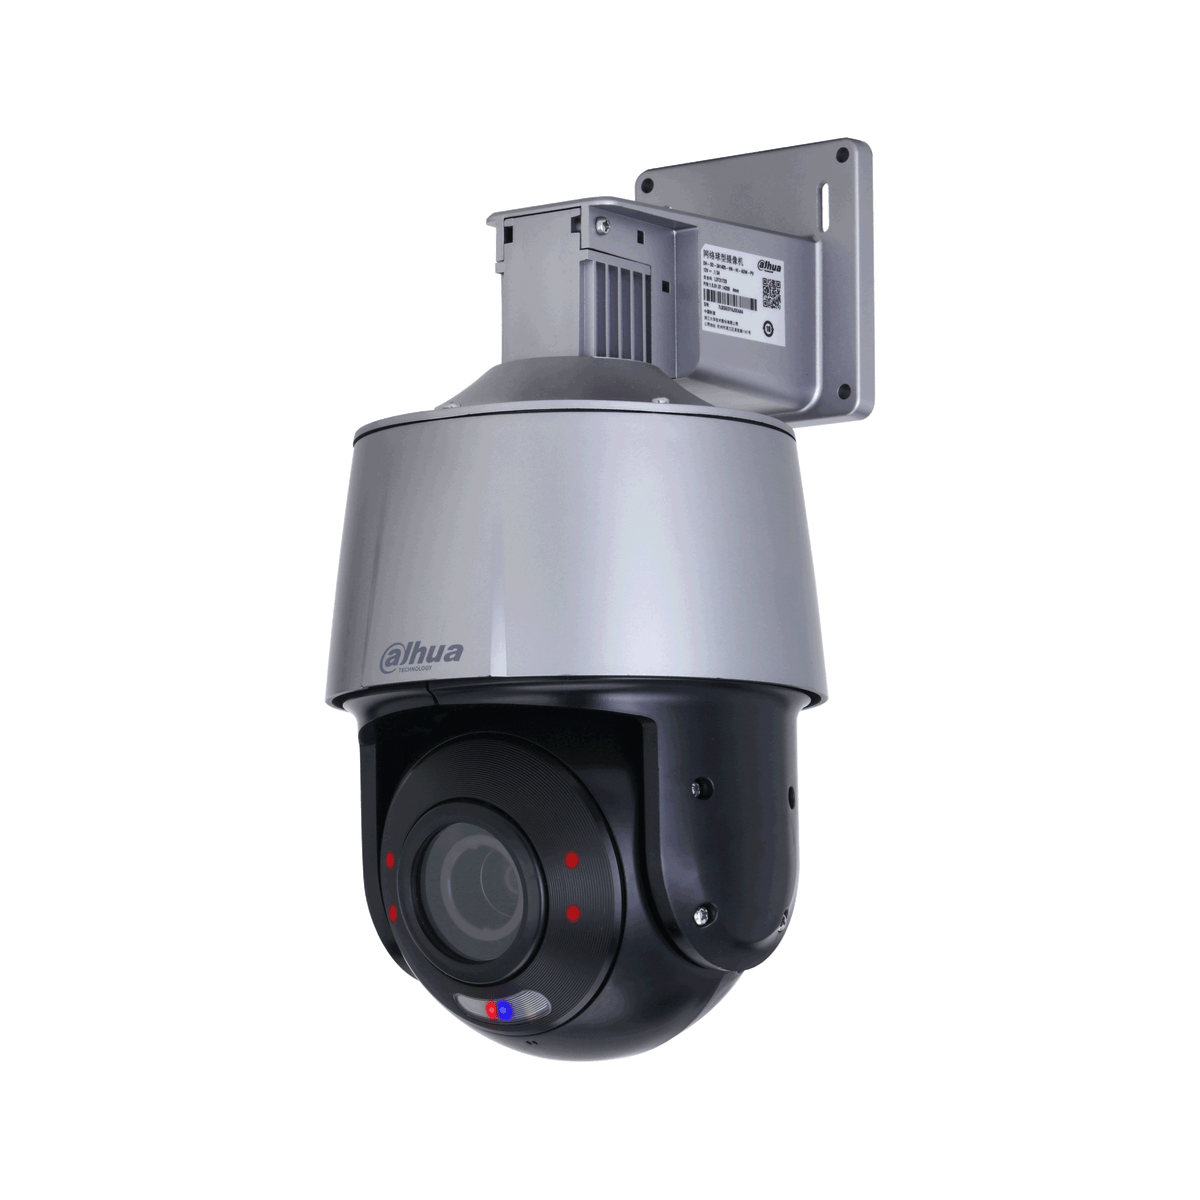 DAHUA SD3A405-GN-PV1 4MP IR Light Network PTZ Camera